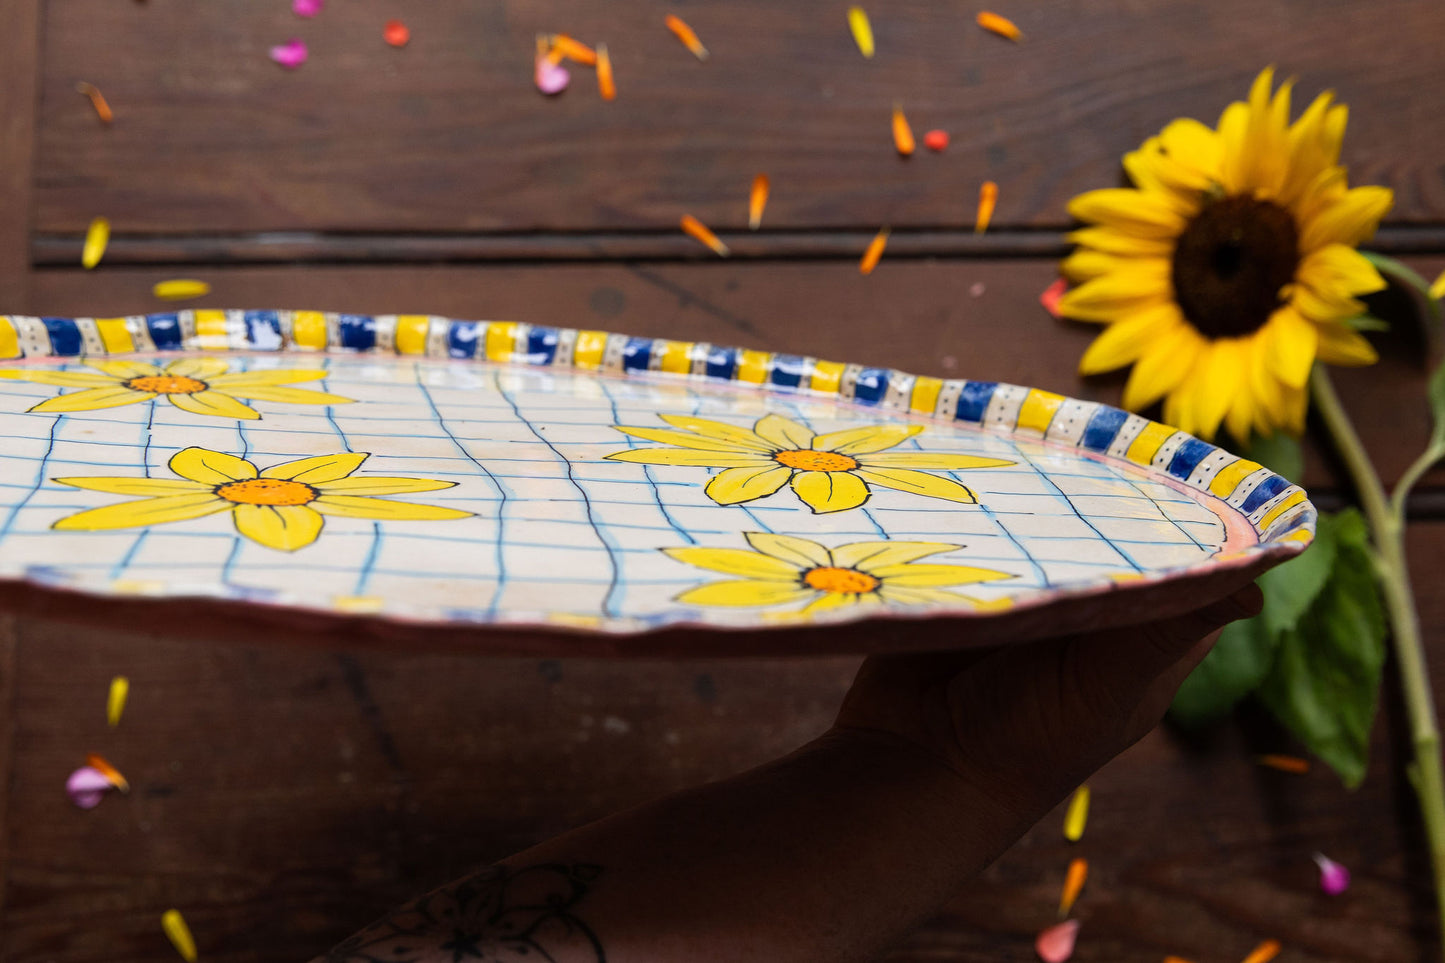 Sunflower Picnic ~ Platter